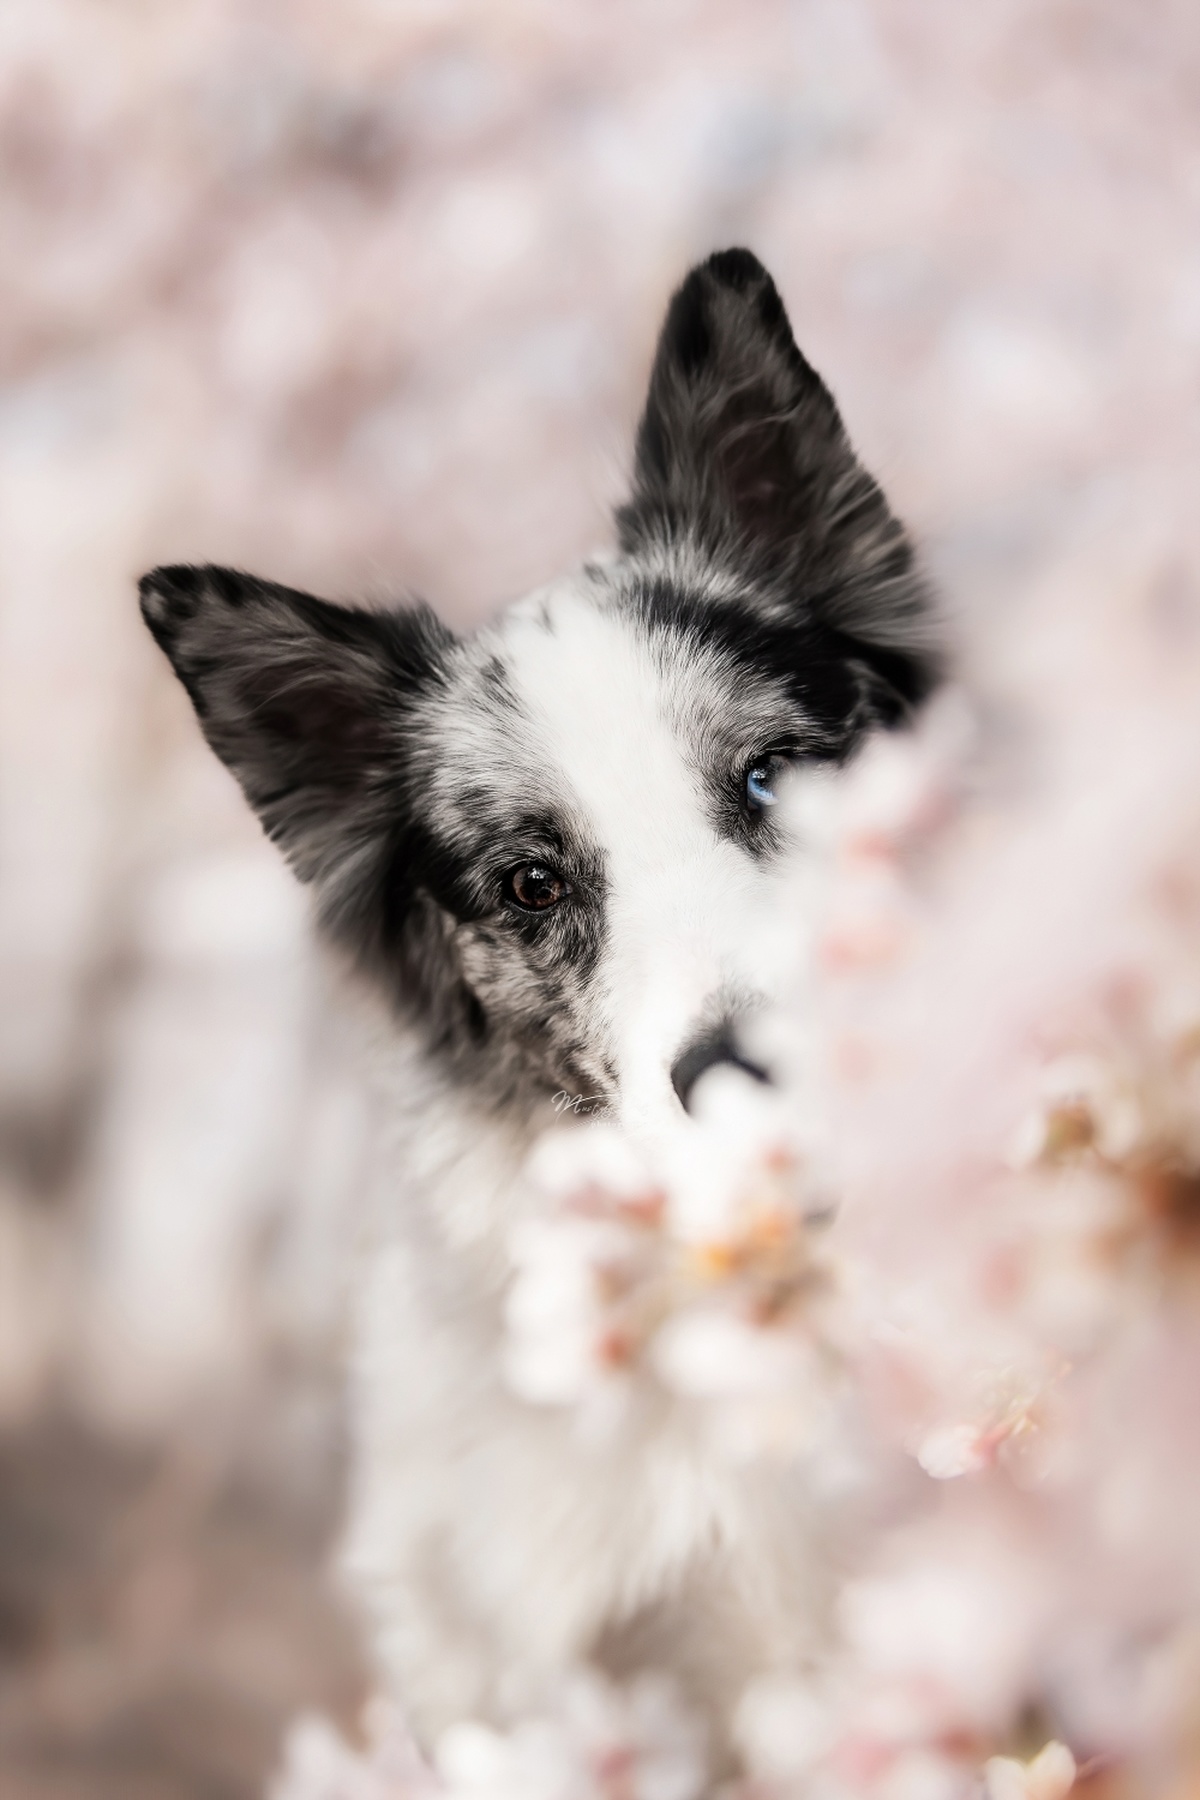 一只黑白相间的狗狗站在一棵开满粉色花朵的树前